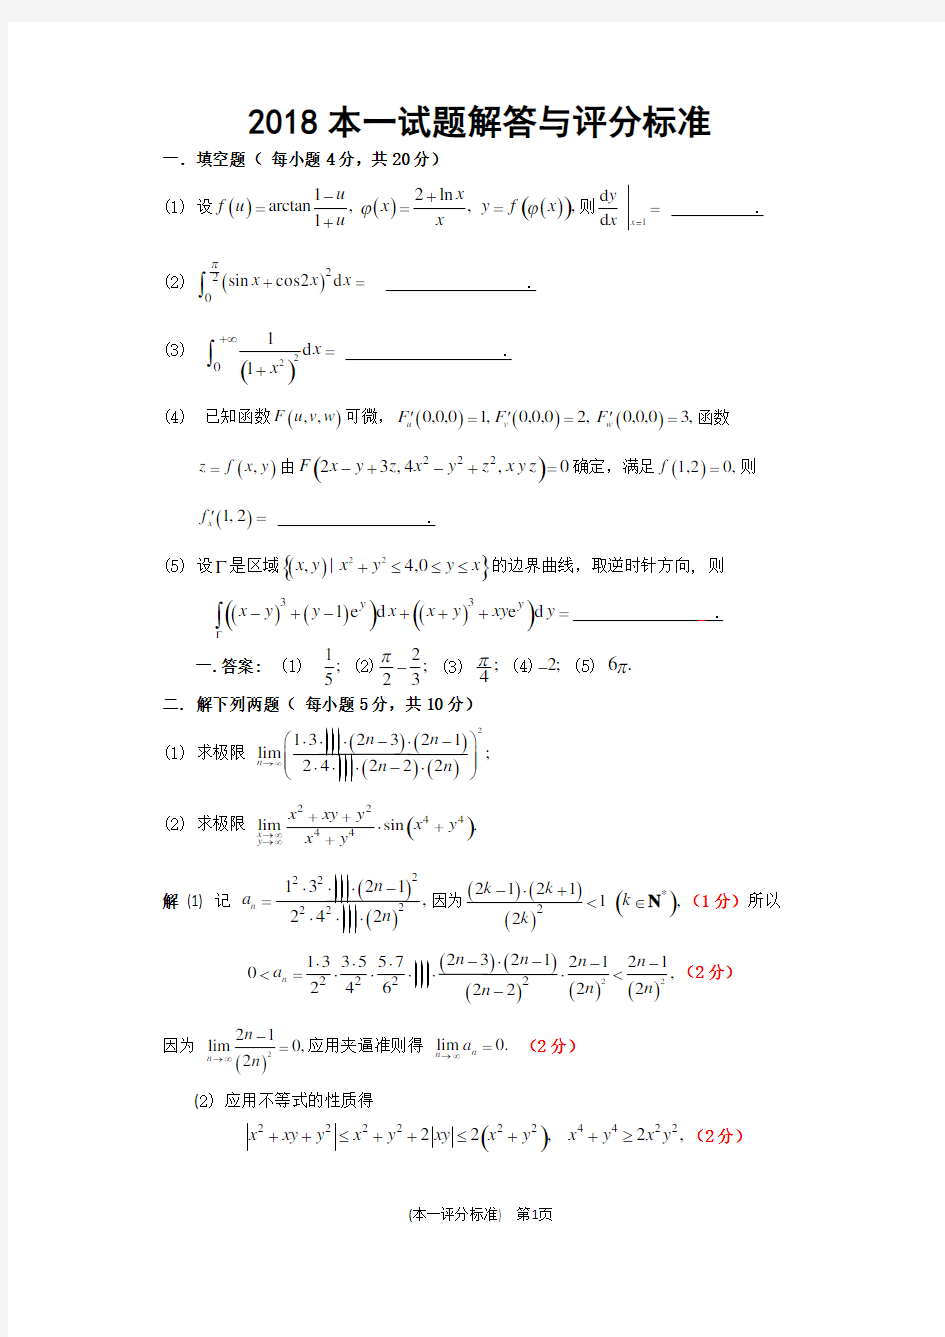 2018年江苏省高等数学竞赛本科一级试题与评分标准